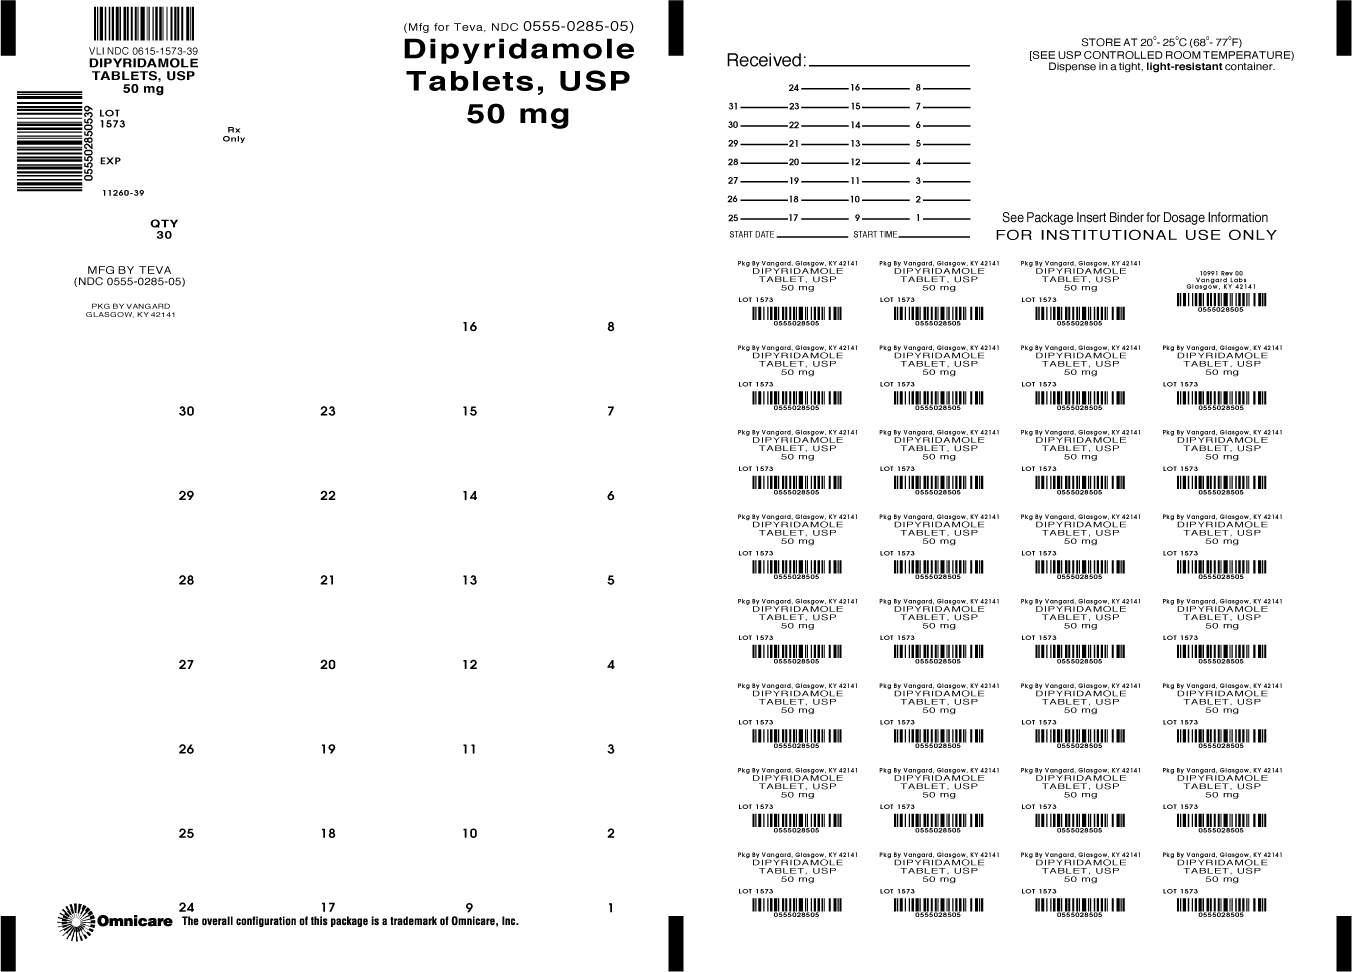 Principal Display Panel- Dipyridamole Tablets, USP 50mg